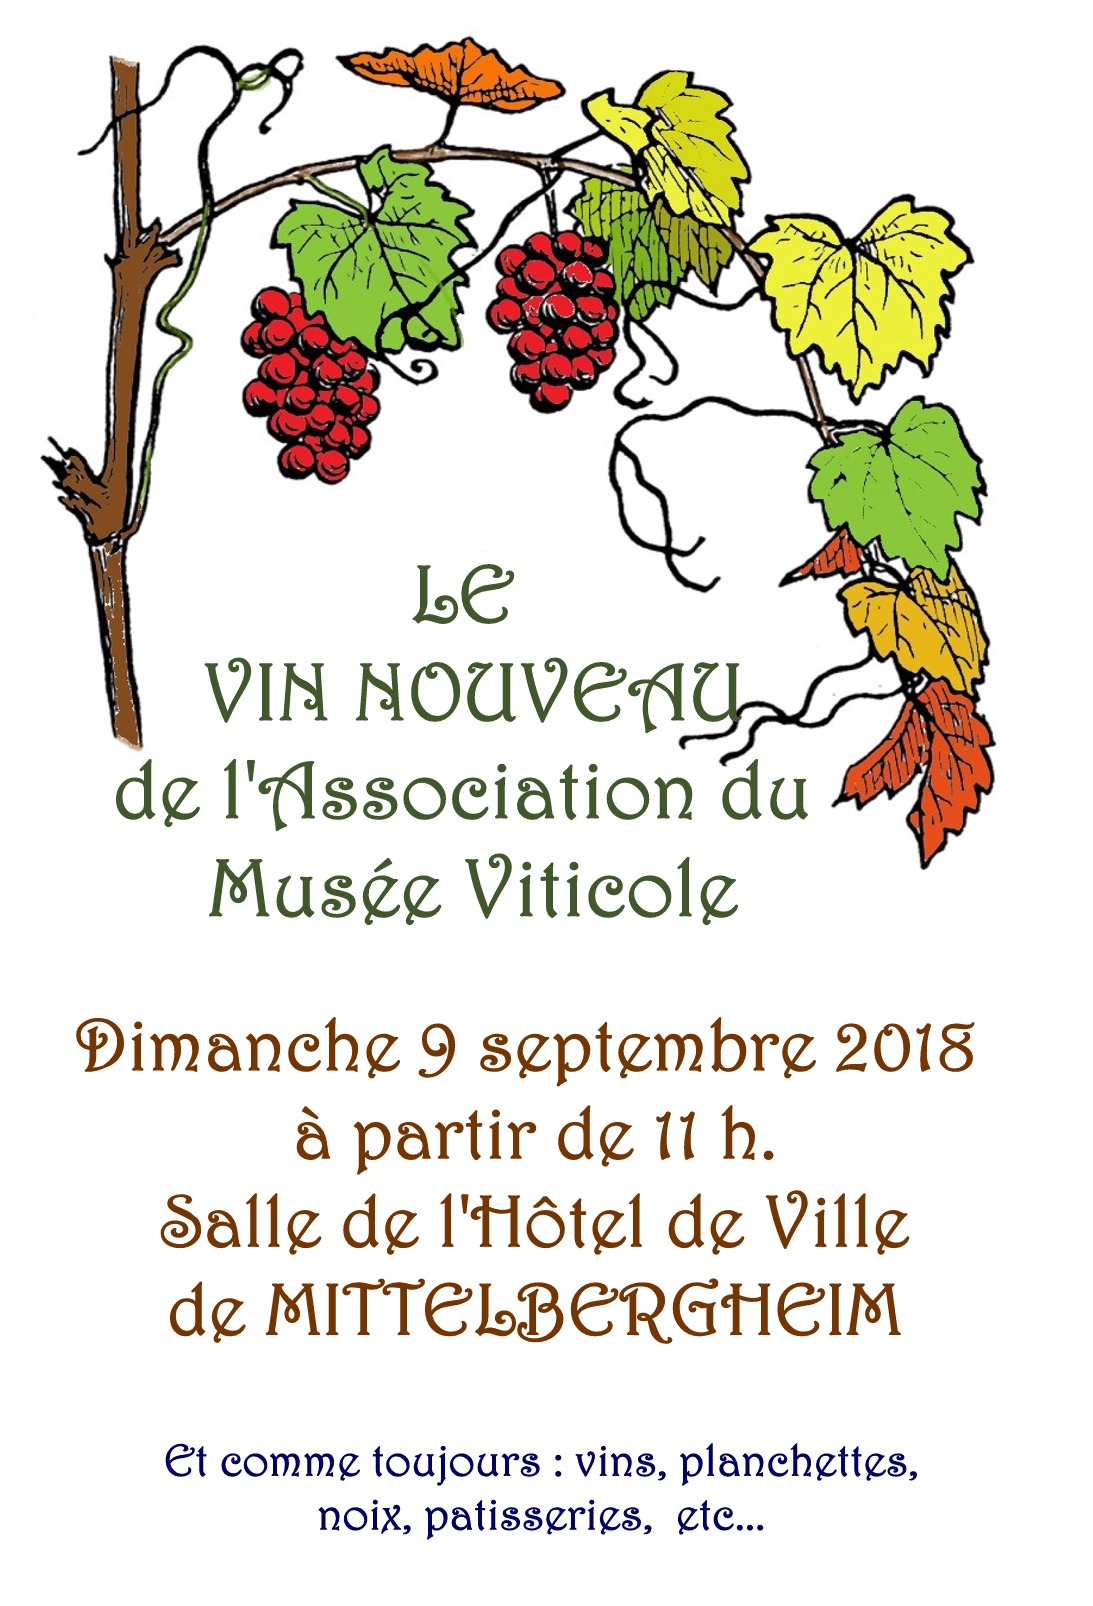 Le Vin Nouveau à l'Association du Musée Viticole